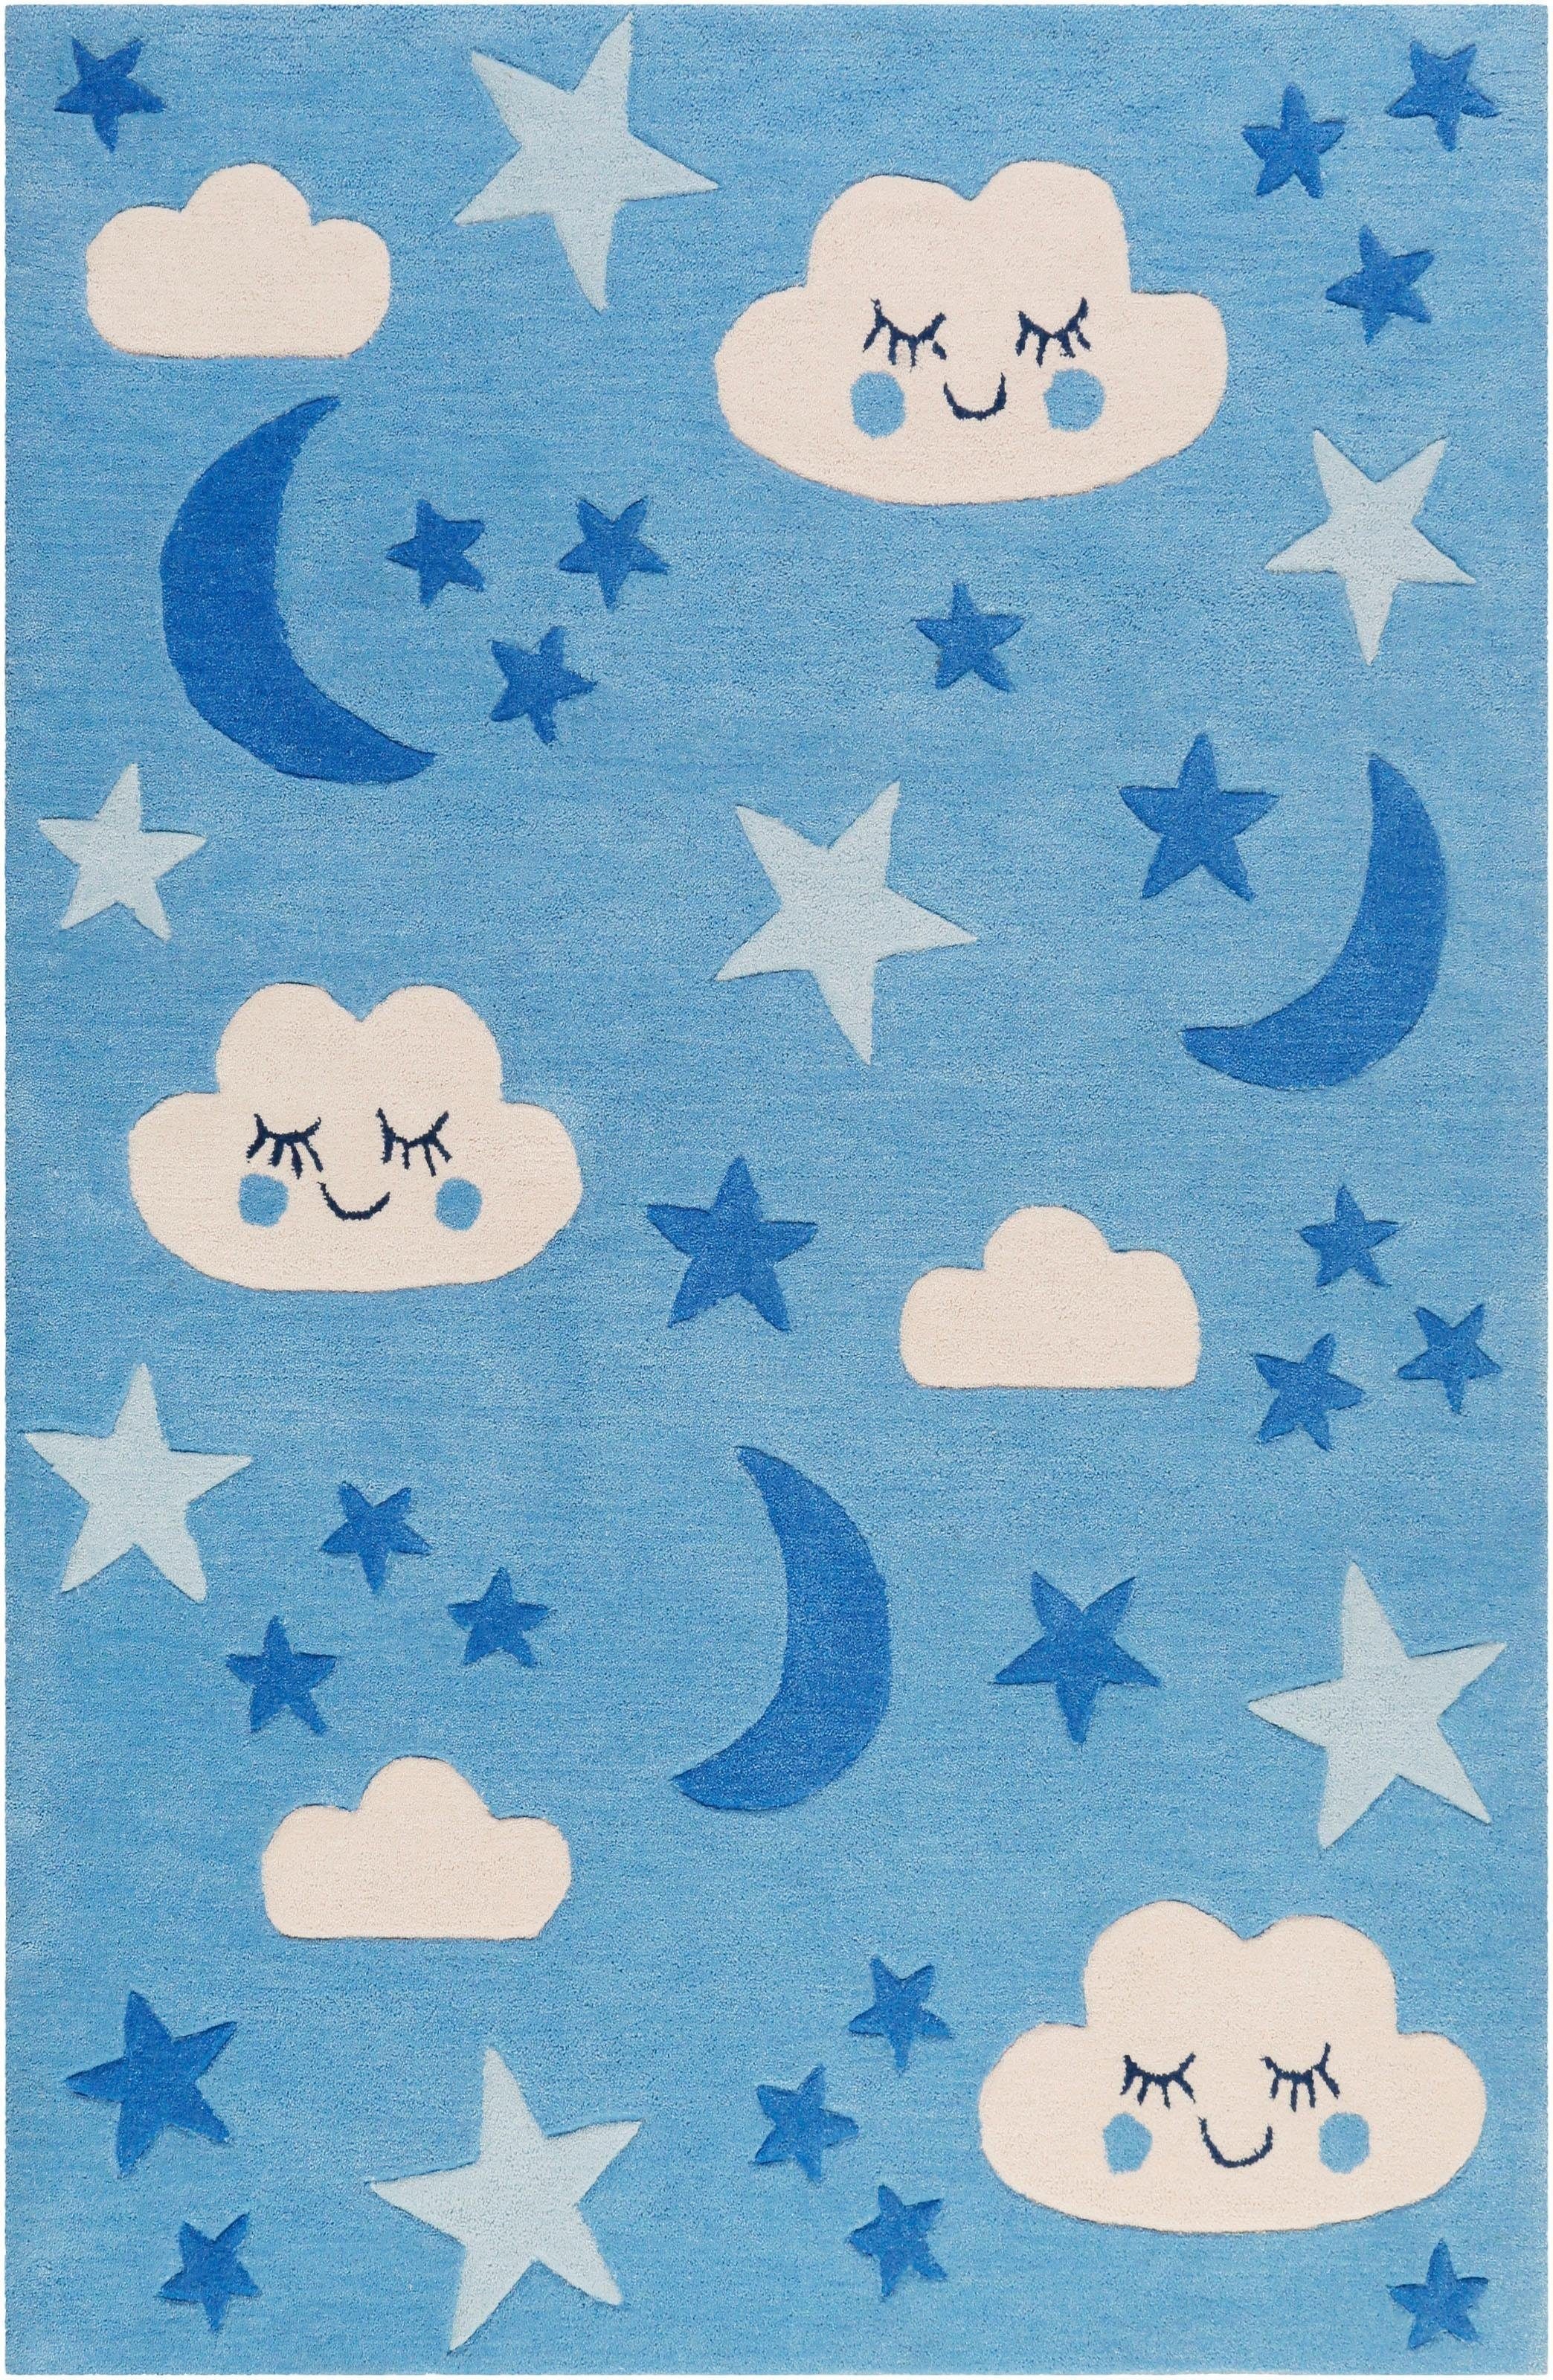 SMART KIDS Kinderteppich »LaLeLu«, rechteckig, Mond Sterne Wolken, Konturenschnitt